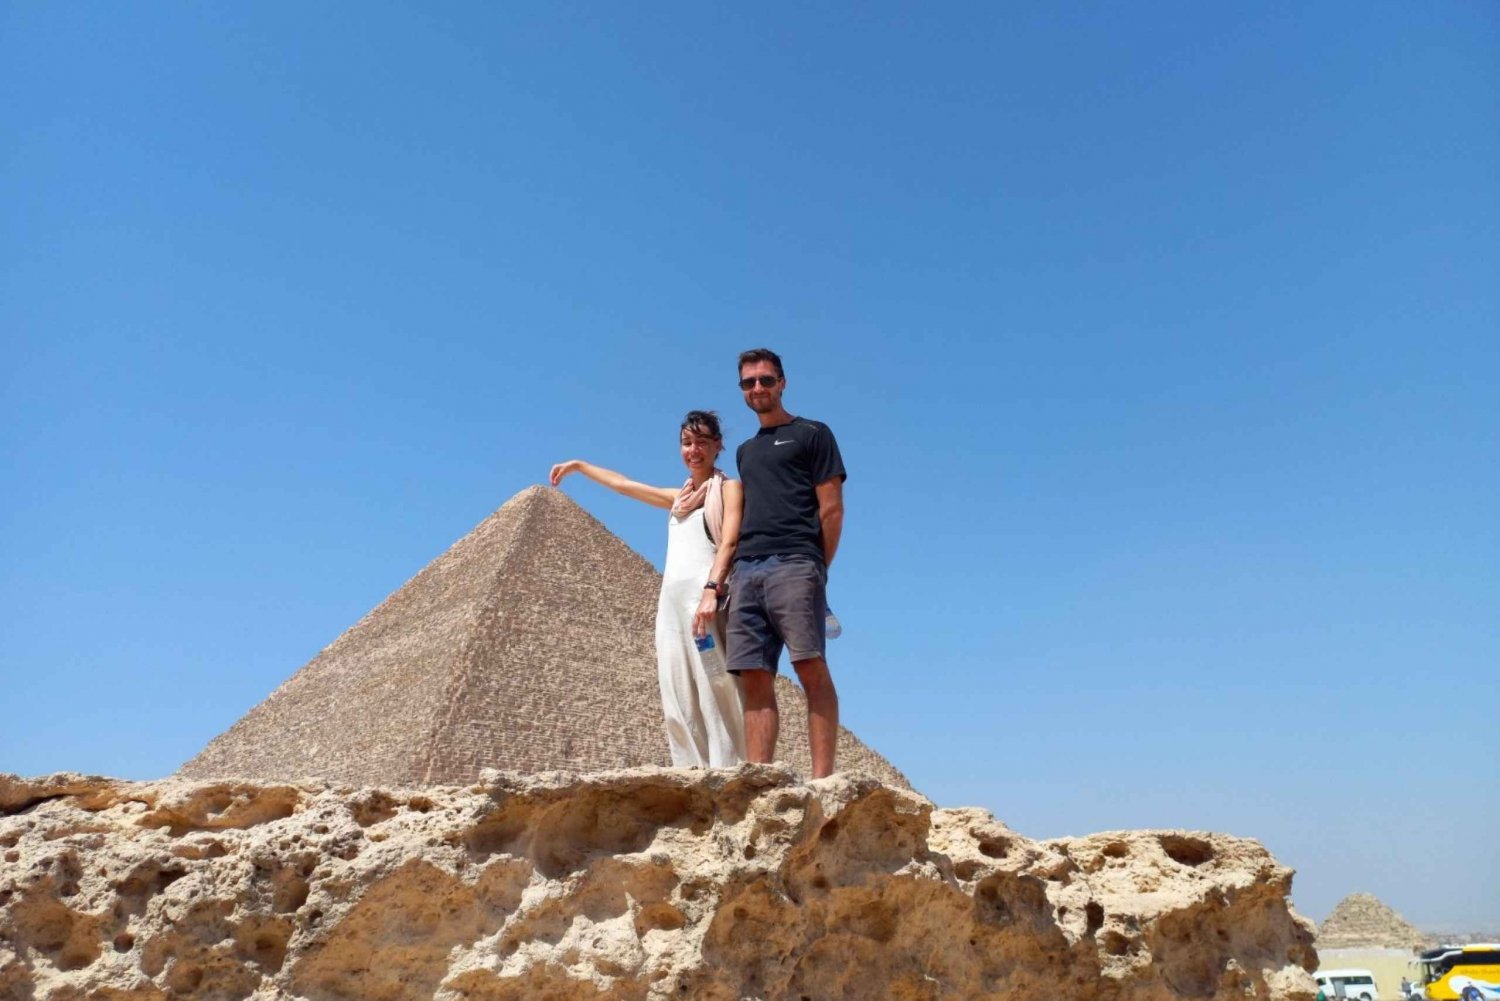 Från Kairo: Pyramiderna i Giza Privat resa med övernattning på flygplatsen